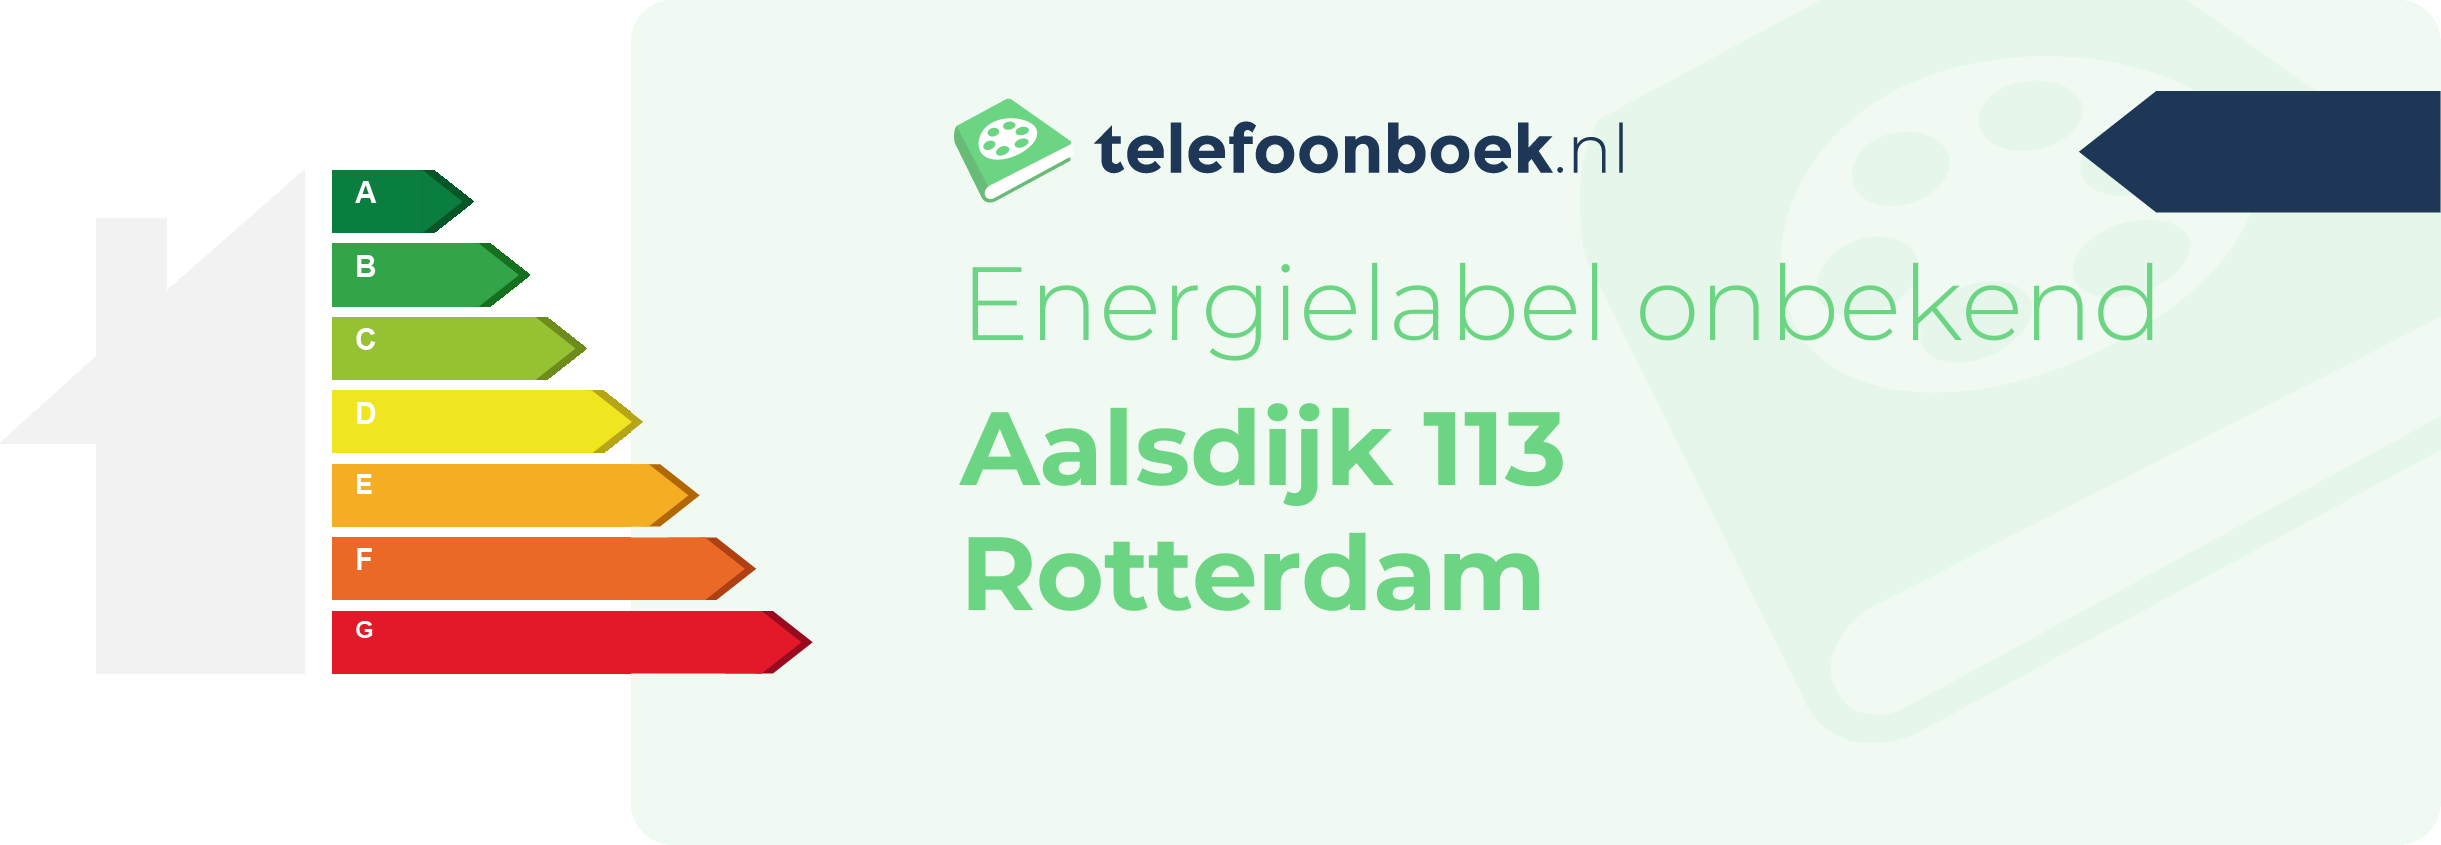 Energielabel Aalsdijk 113 Rotterdam